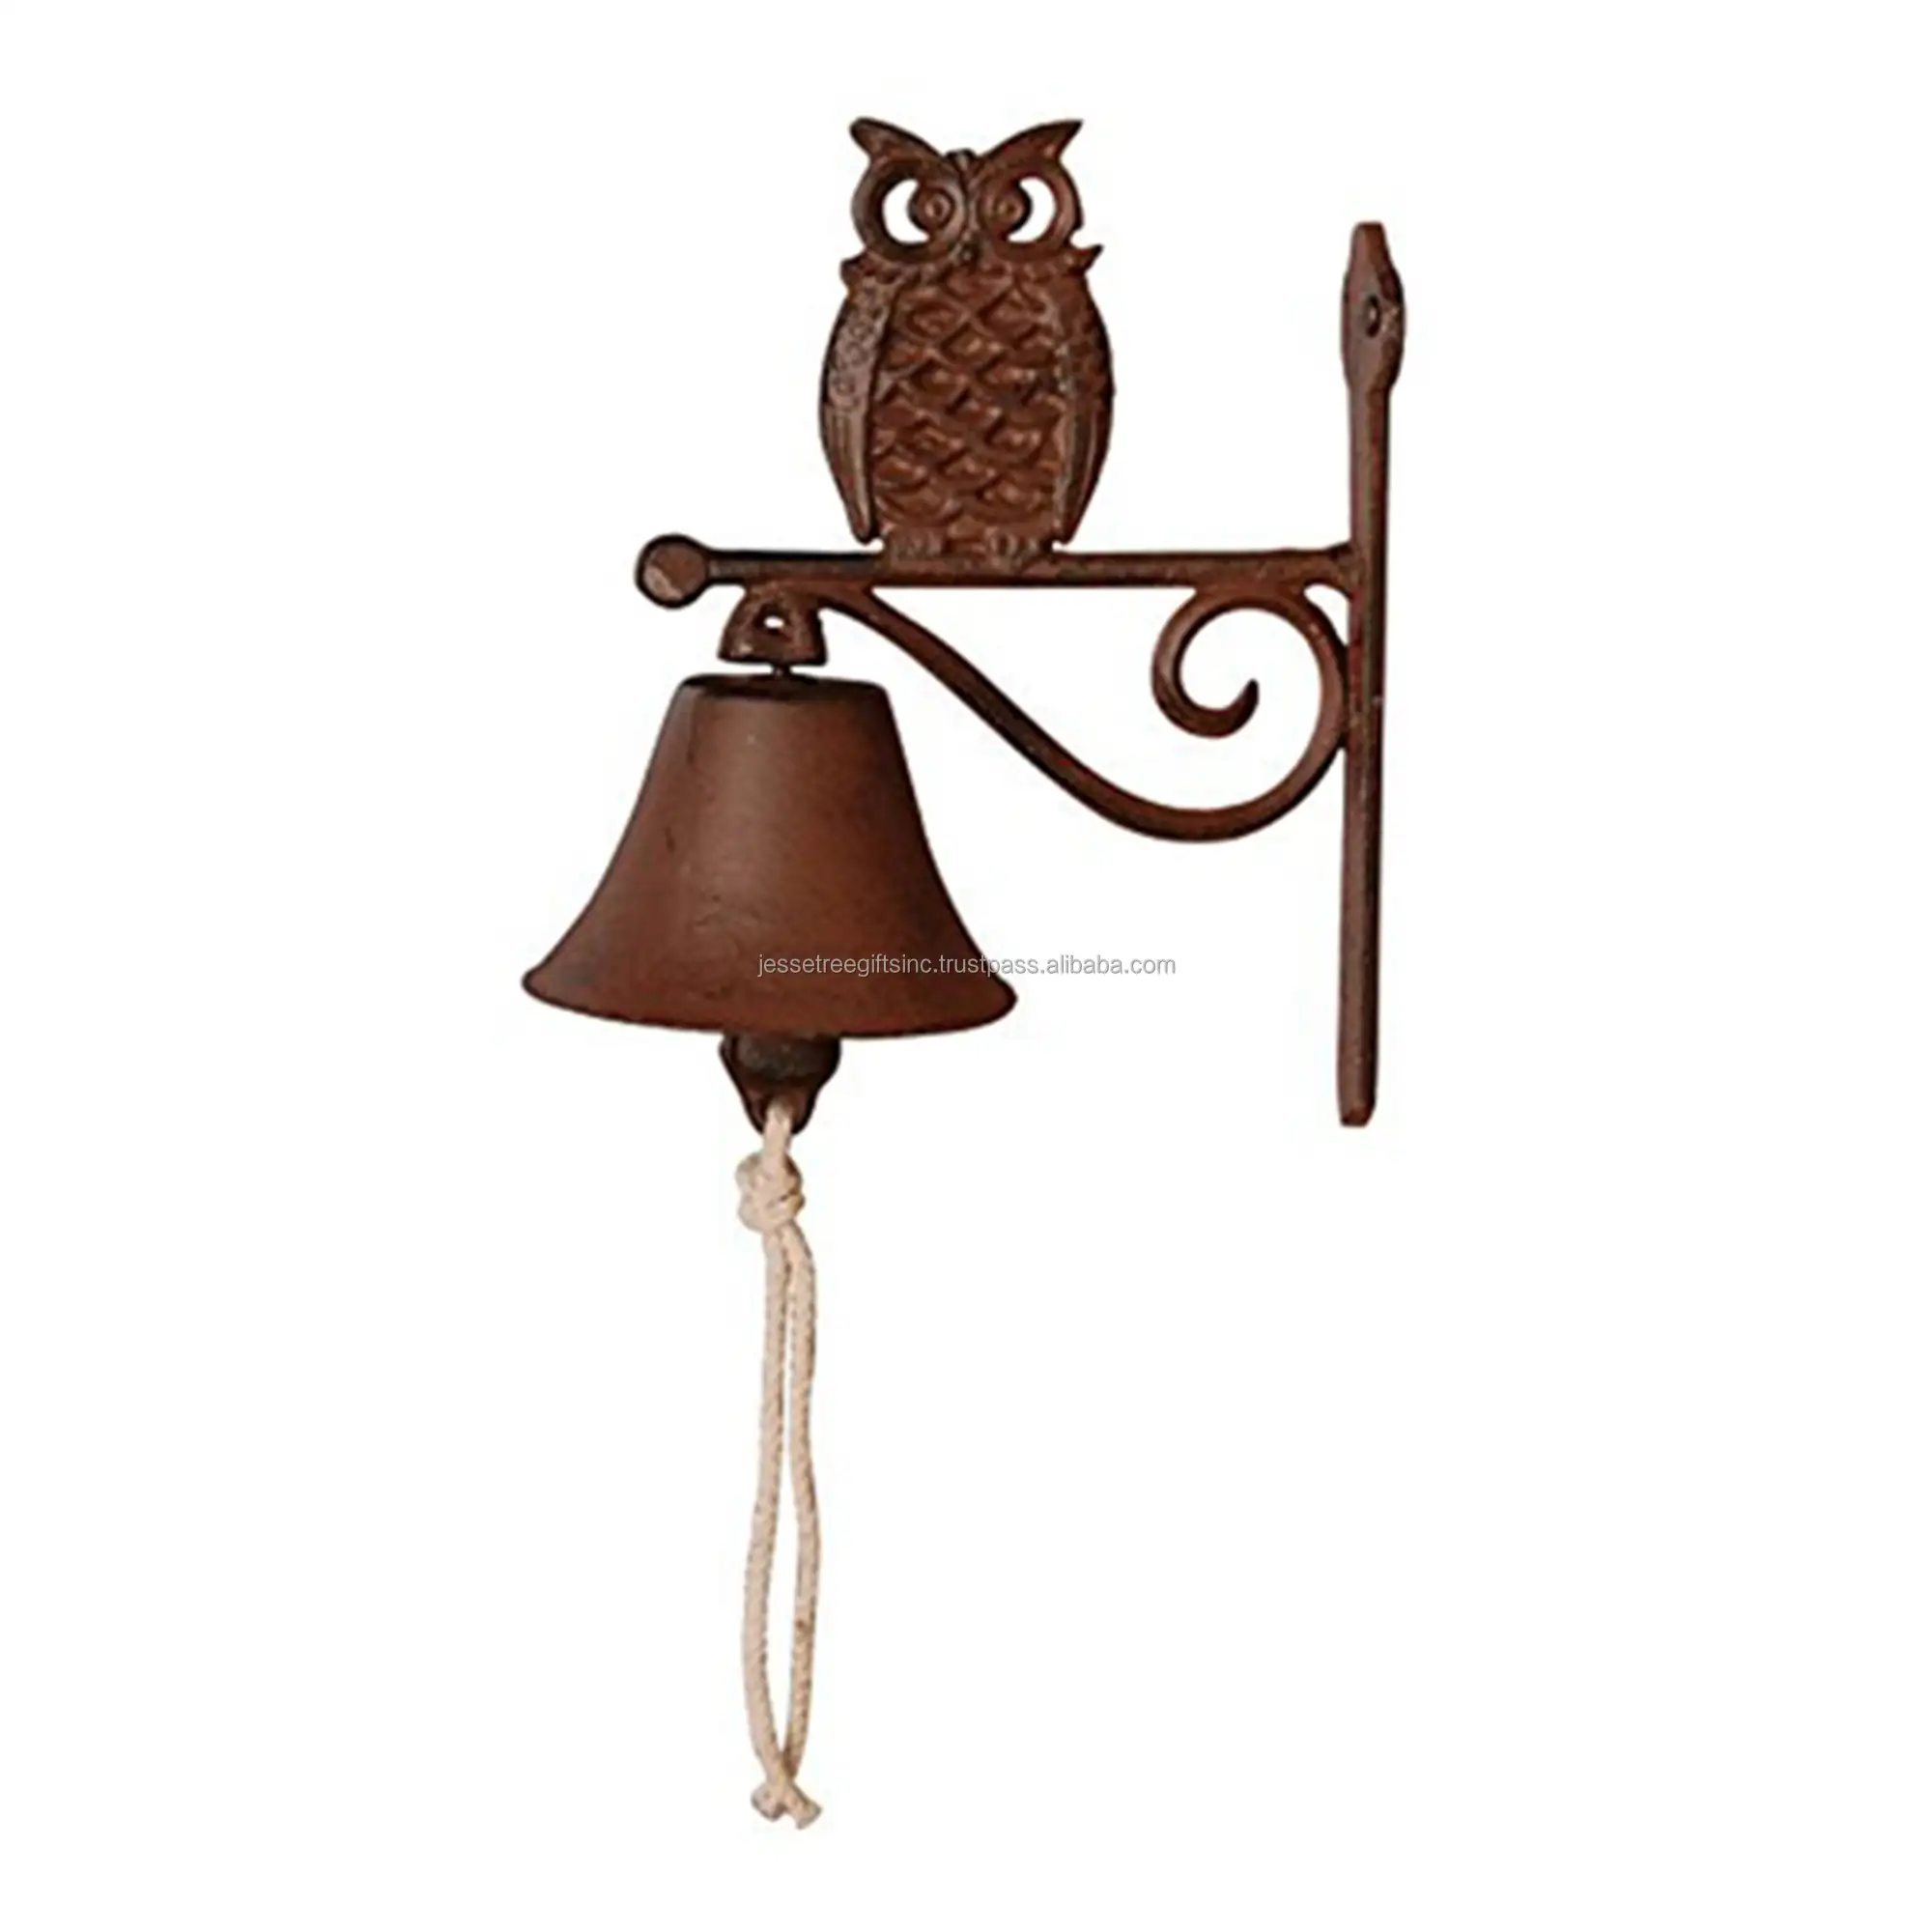 Дверной звонок ручной работы из чугуна с коричневым порошковым покрытием, настенный подвесной дизайн в виде совы с гвоздями для украшения